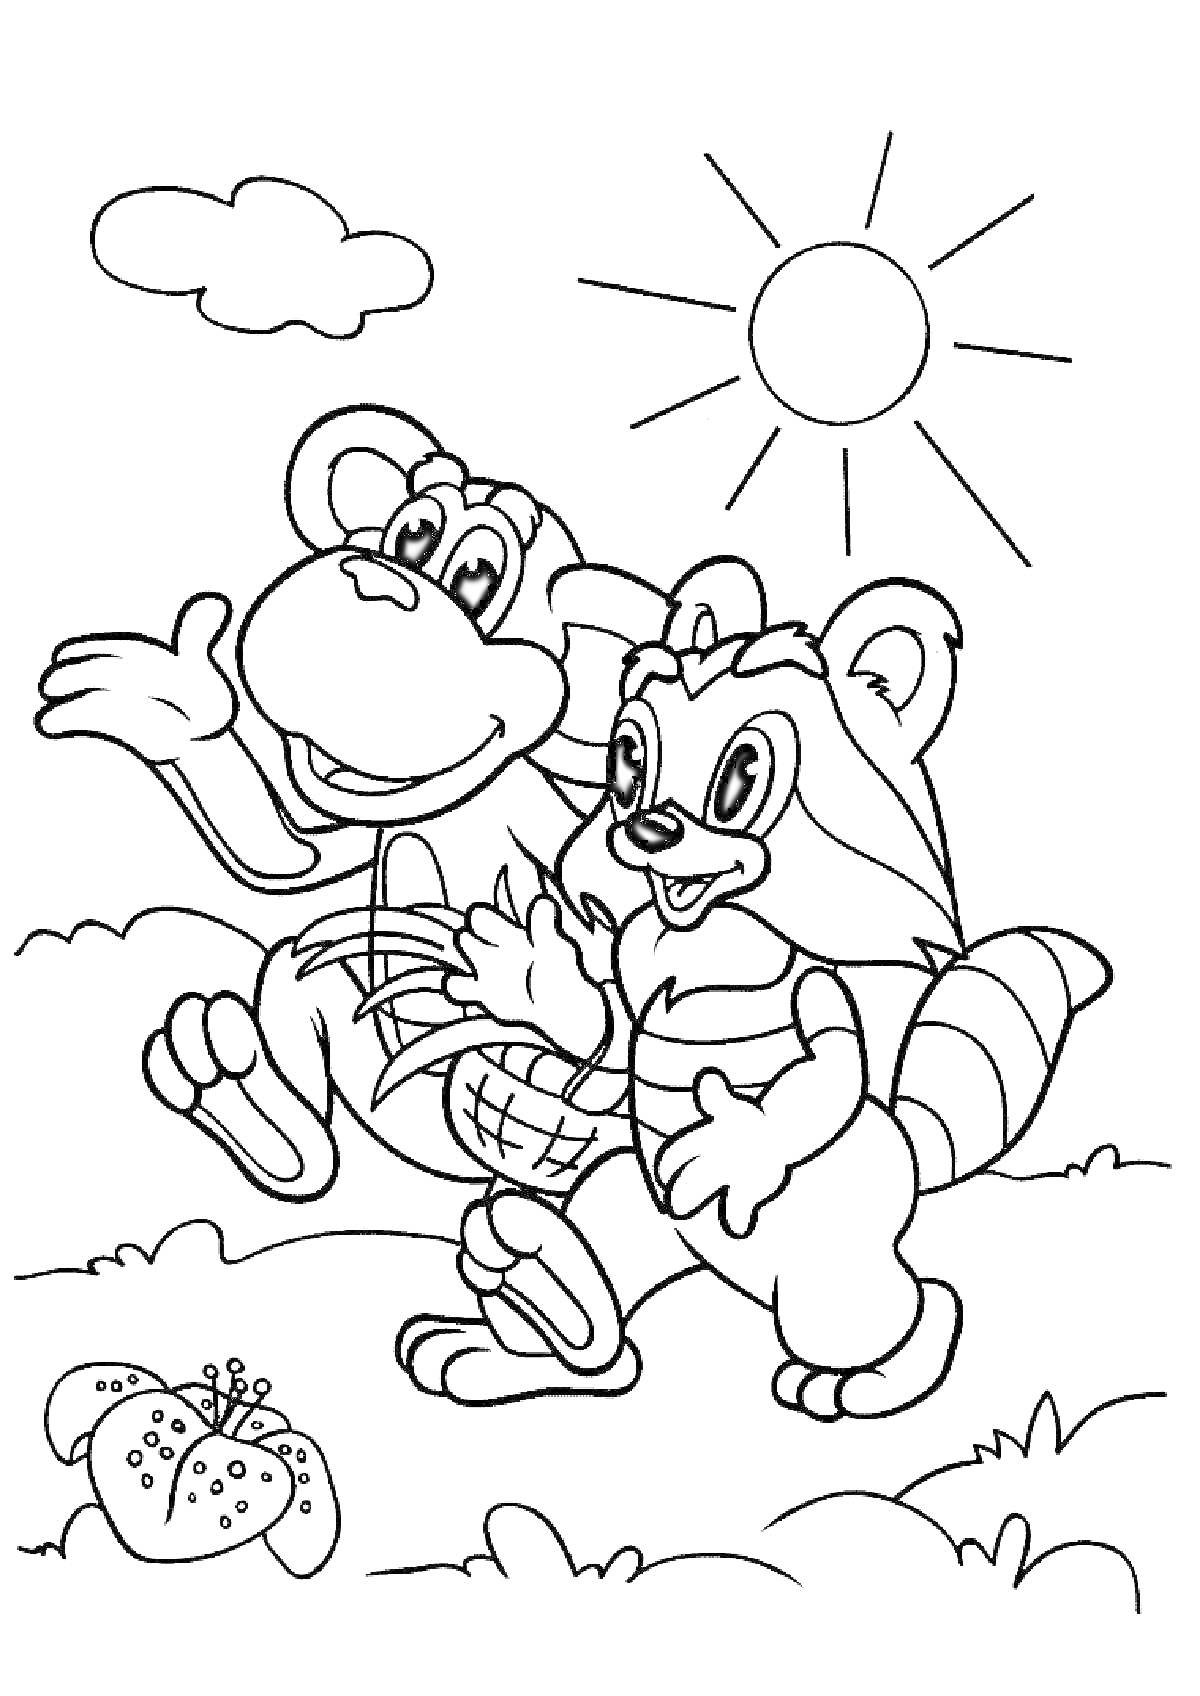 Раскраска Крошка Енот и обезьянка идут с корзиной травы по полю, на фоне солнечный день с облаками и цветок в траве